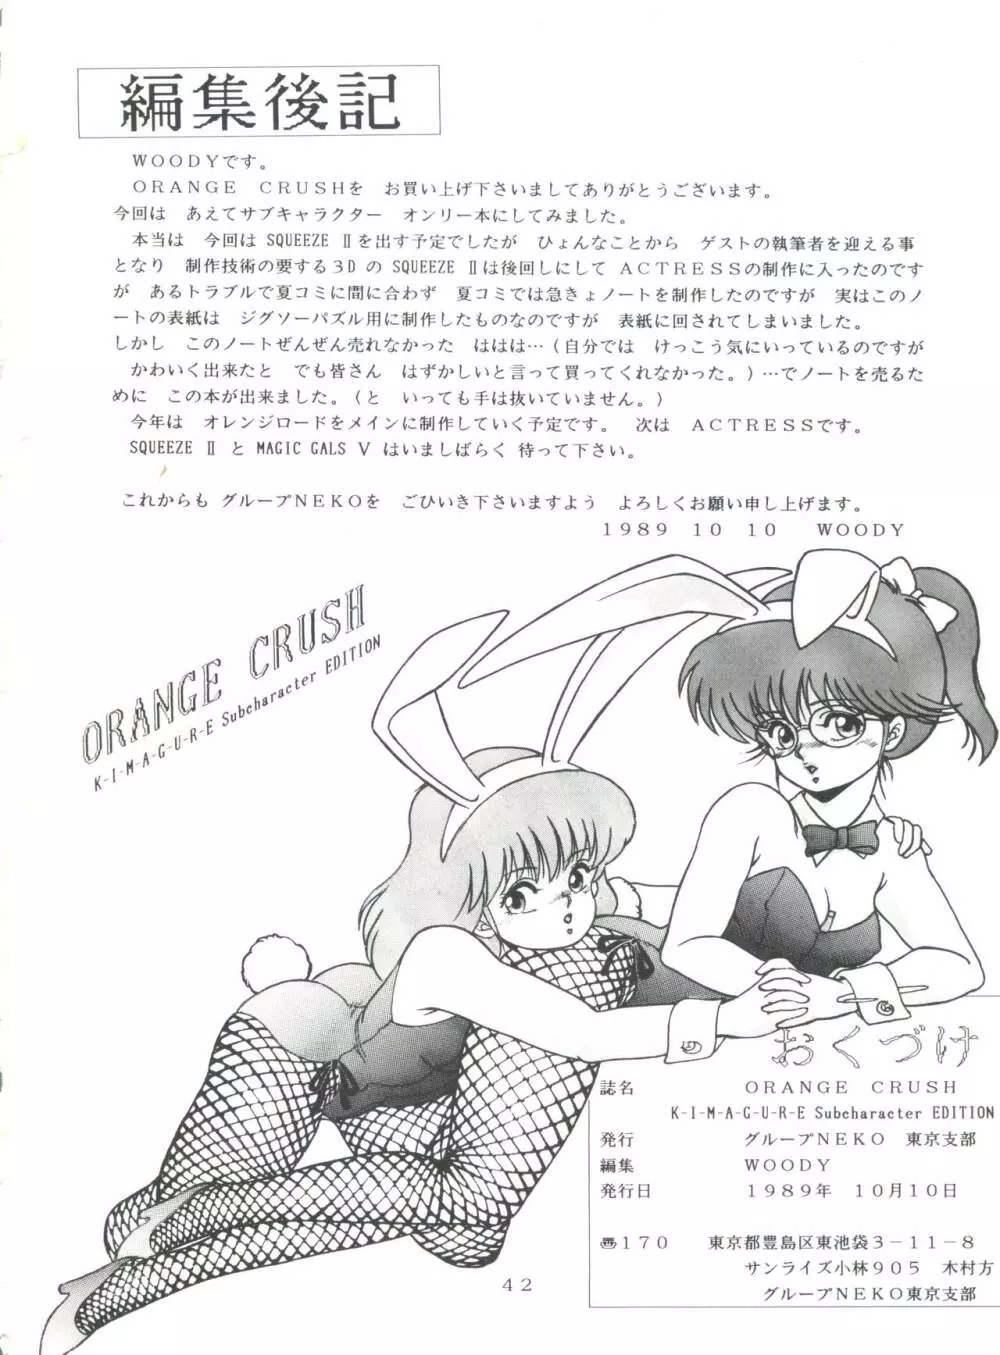 [グループNEKO (WOODY)] ORANGE CRUSH K-I-M-A-G-U-R-E Subcharacter EDITION (きまぐれオレンジ☆ロード) 42ページ